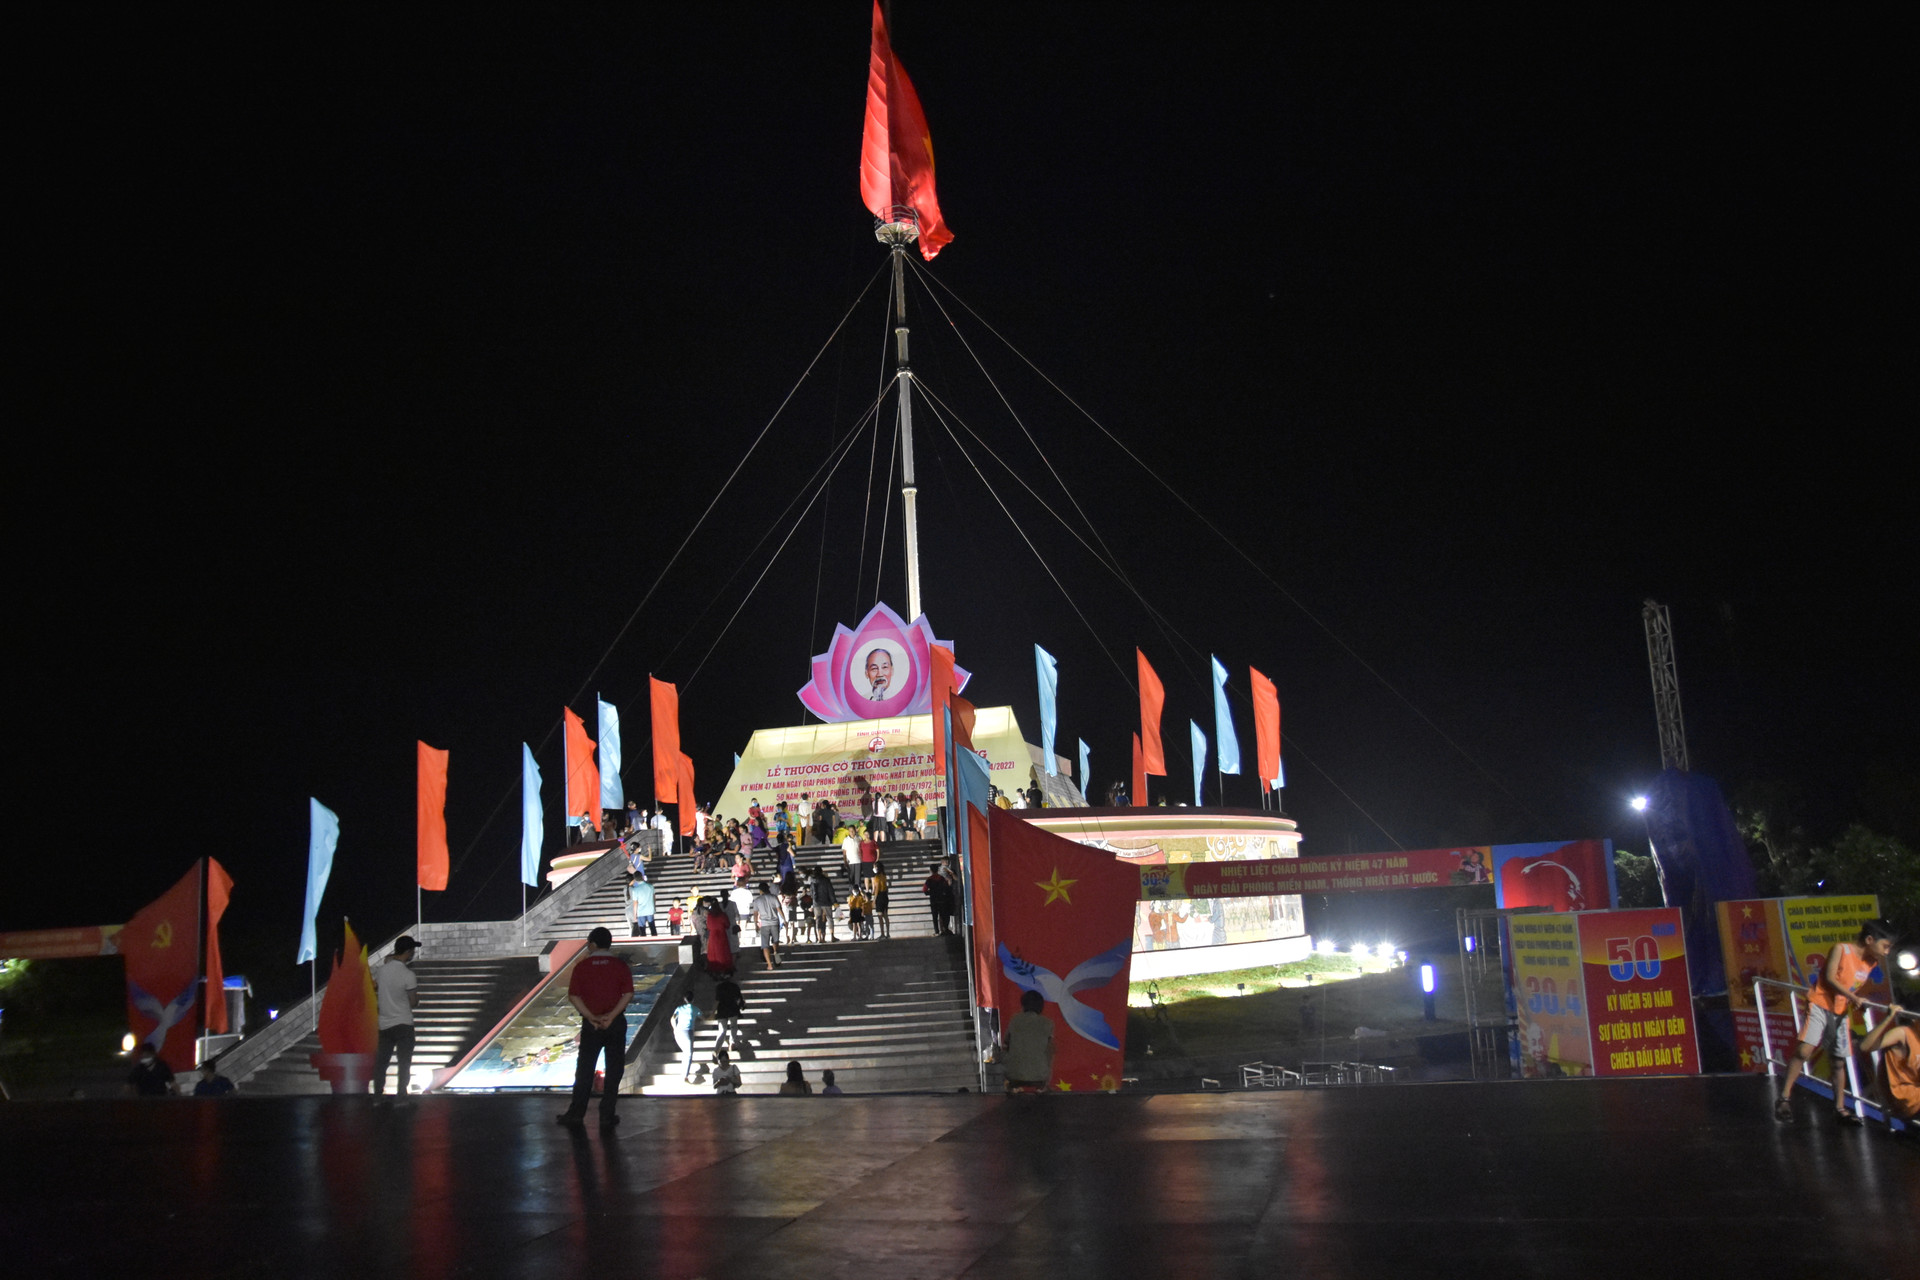 Tại khu di tích quốc gia đặc biệt đôi bờ Hiền Lương - Bến Hải sẽ diễn ra Lễ Thượng cờ “Thống nhất non sông” và diễu binh kỷ niệm 47 năm ngày giải phóng miền Nam thống nhất đất nước (30/4/1975 – 30/4/2022), 50 năm ngày giải phóng Quảng Trị (1/5/1972 – 1/5/2022) vào 7 giờ sáng ngày 30/4.